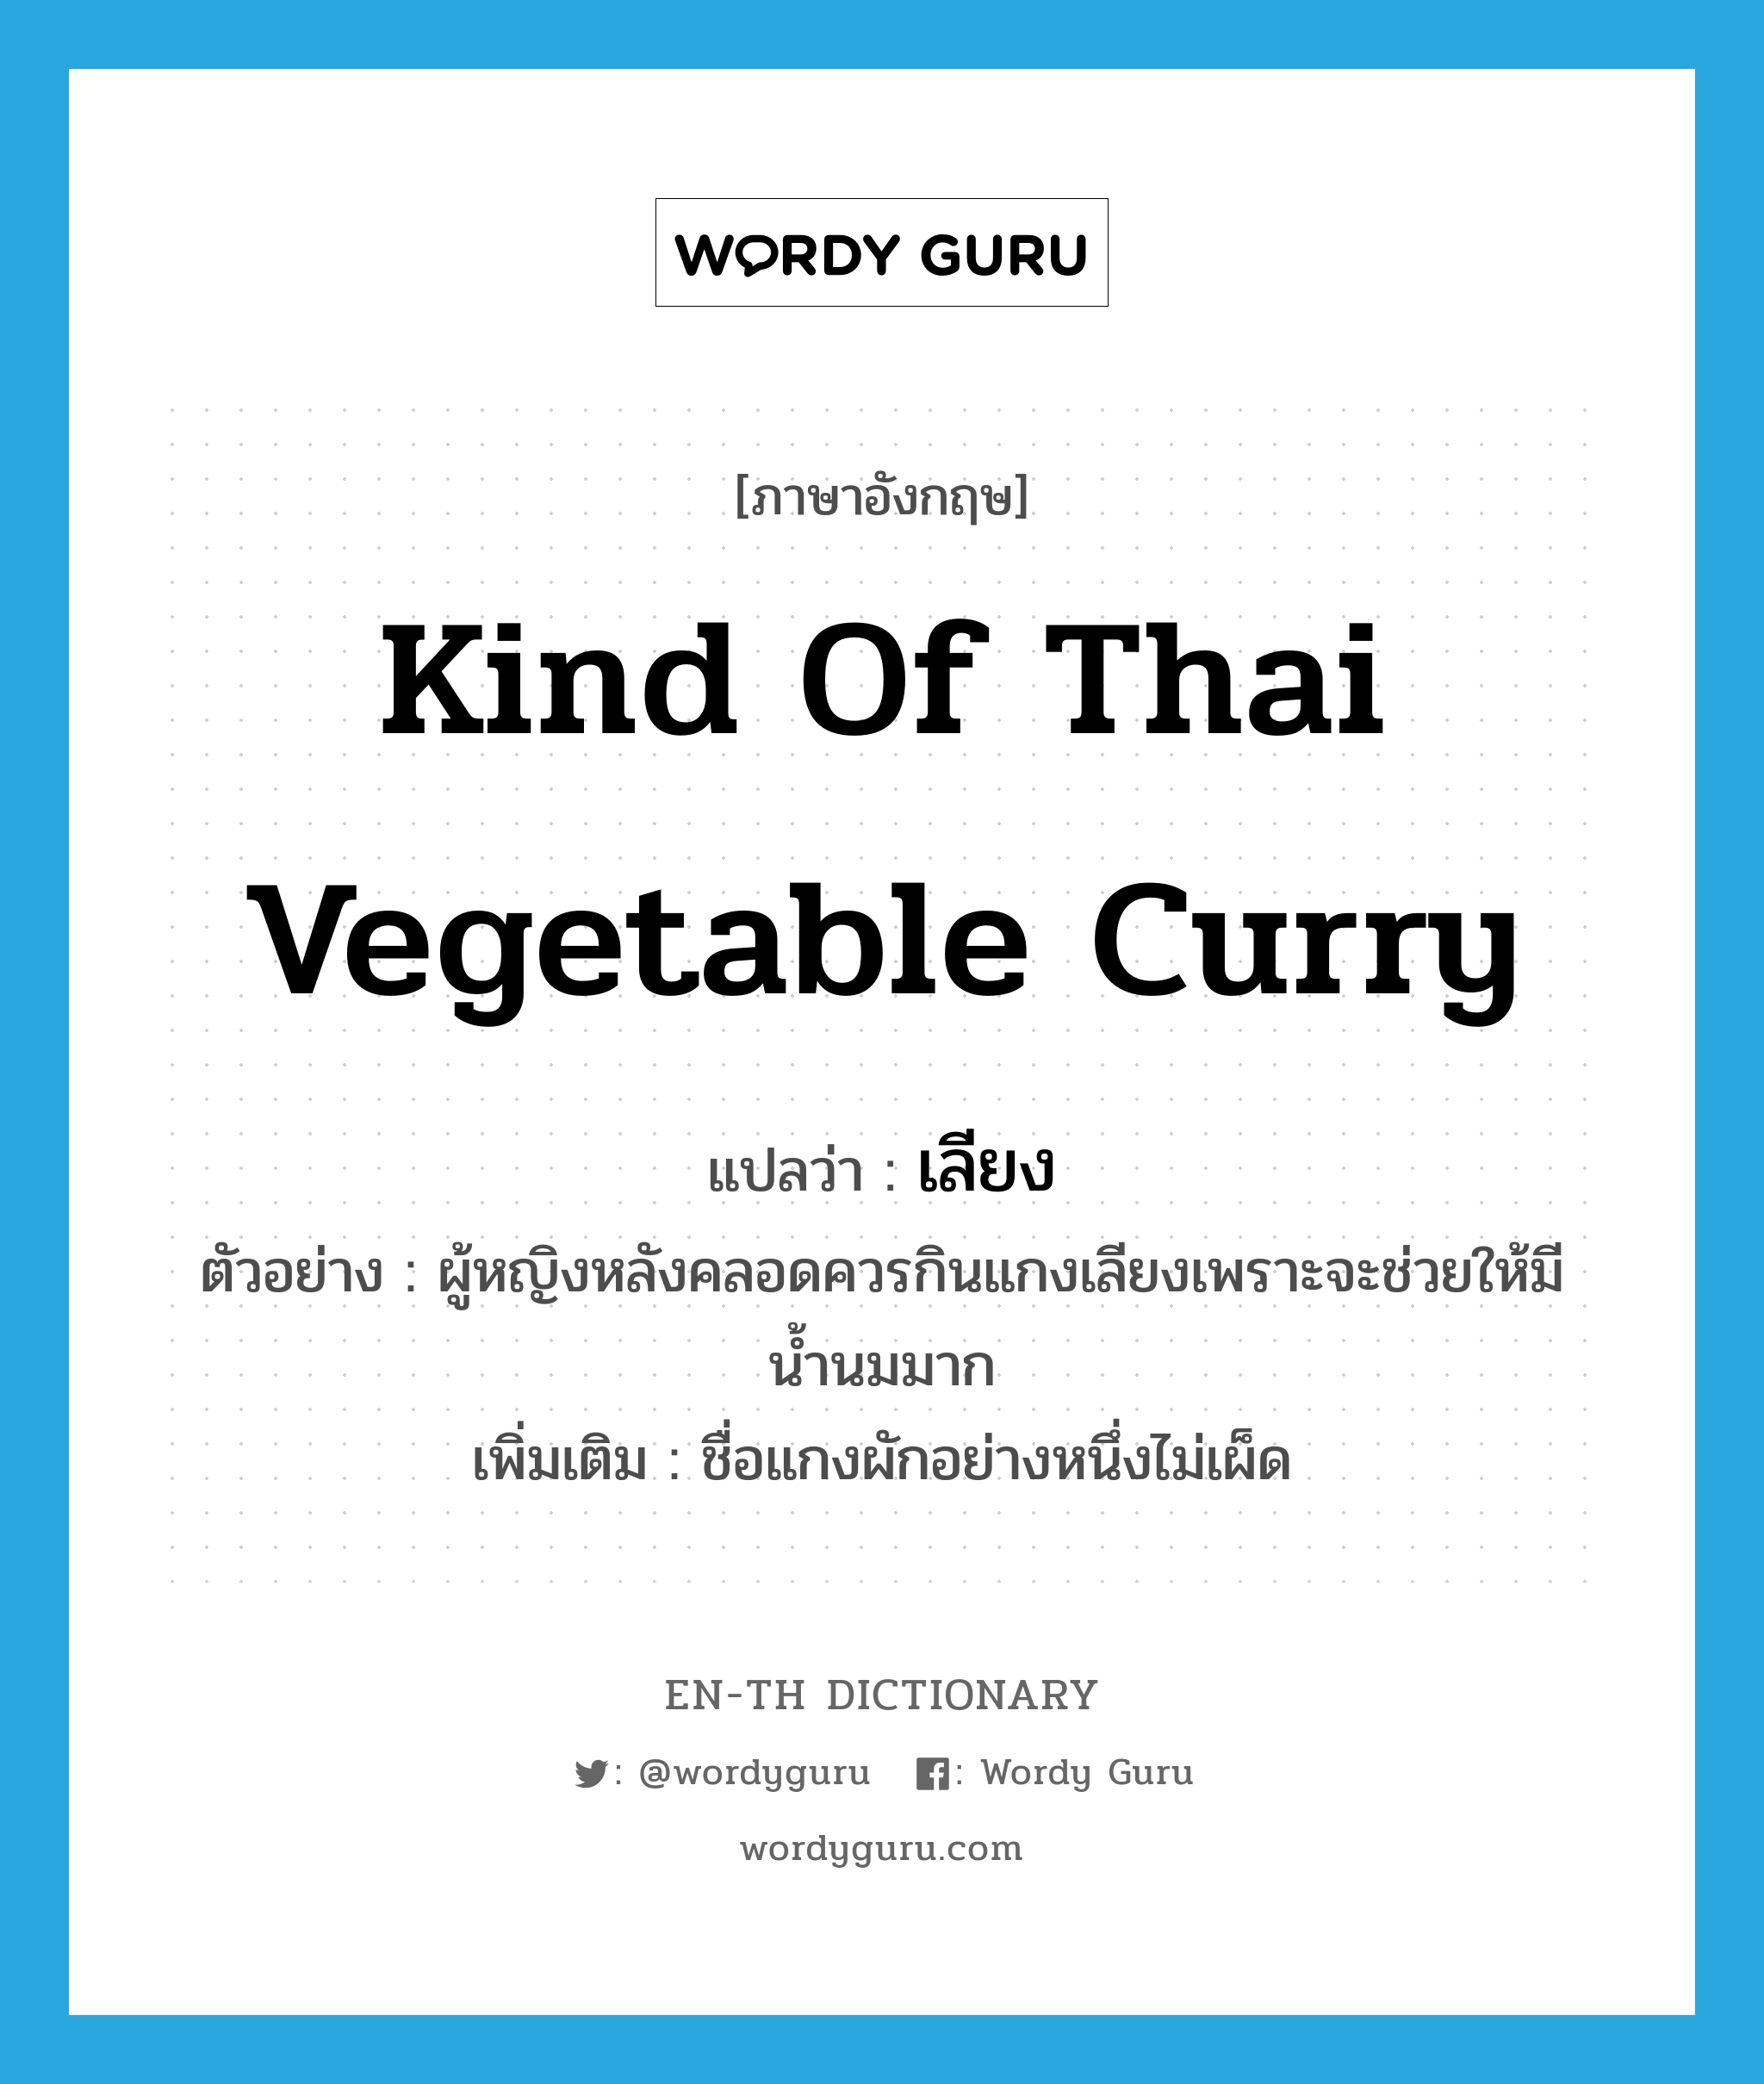 kind of Thai vegetable curry แปลว่า?, คำศัพท์ภาษาอังกฤษ kind of Thai vegetable curry แปลว่า เลียง ประเภท N ตัวอย่าง ผู้หญิงหลังคลอดควรกินแกงเลียงเพราะจะช่วยให้มีน้ำนมมาก เพิ่มเติม ชื่อแกงผักอย่างหนึ่งไม่เผ็ด หมวด N